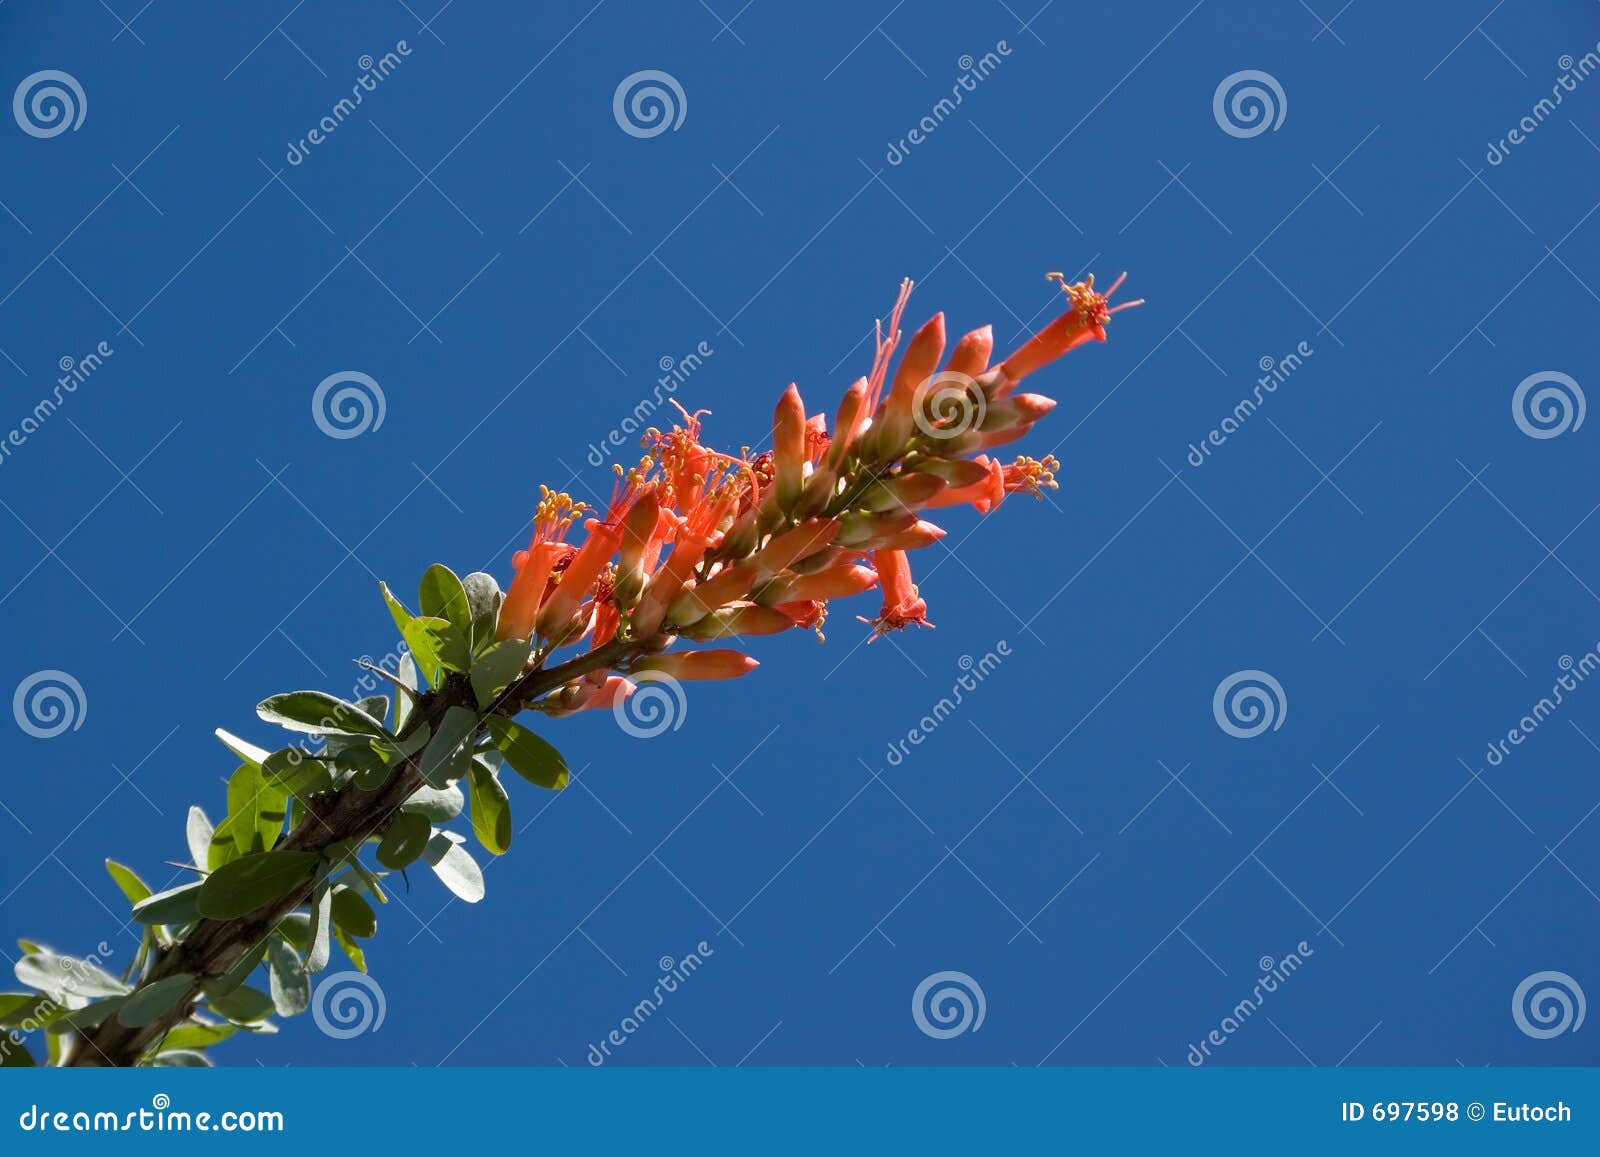 ocotillo flower